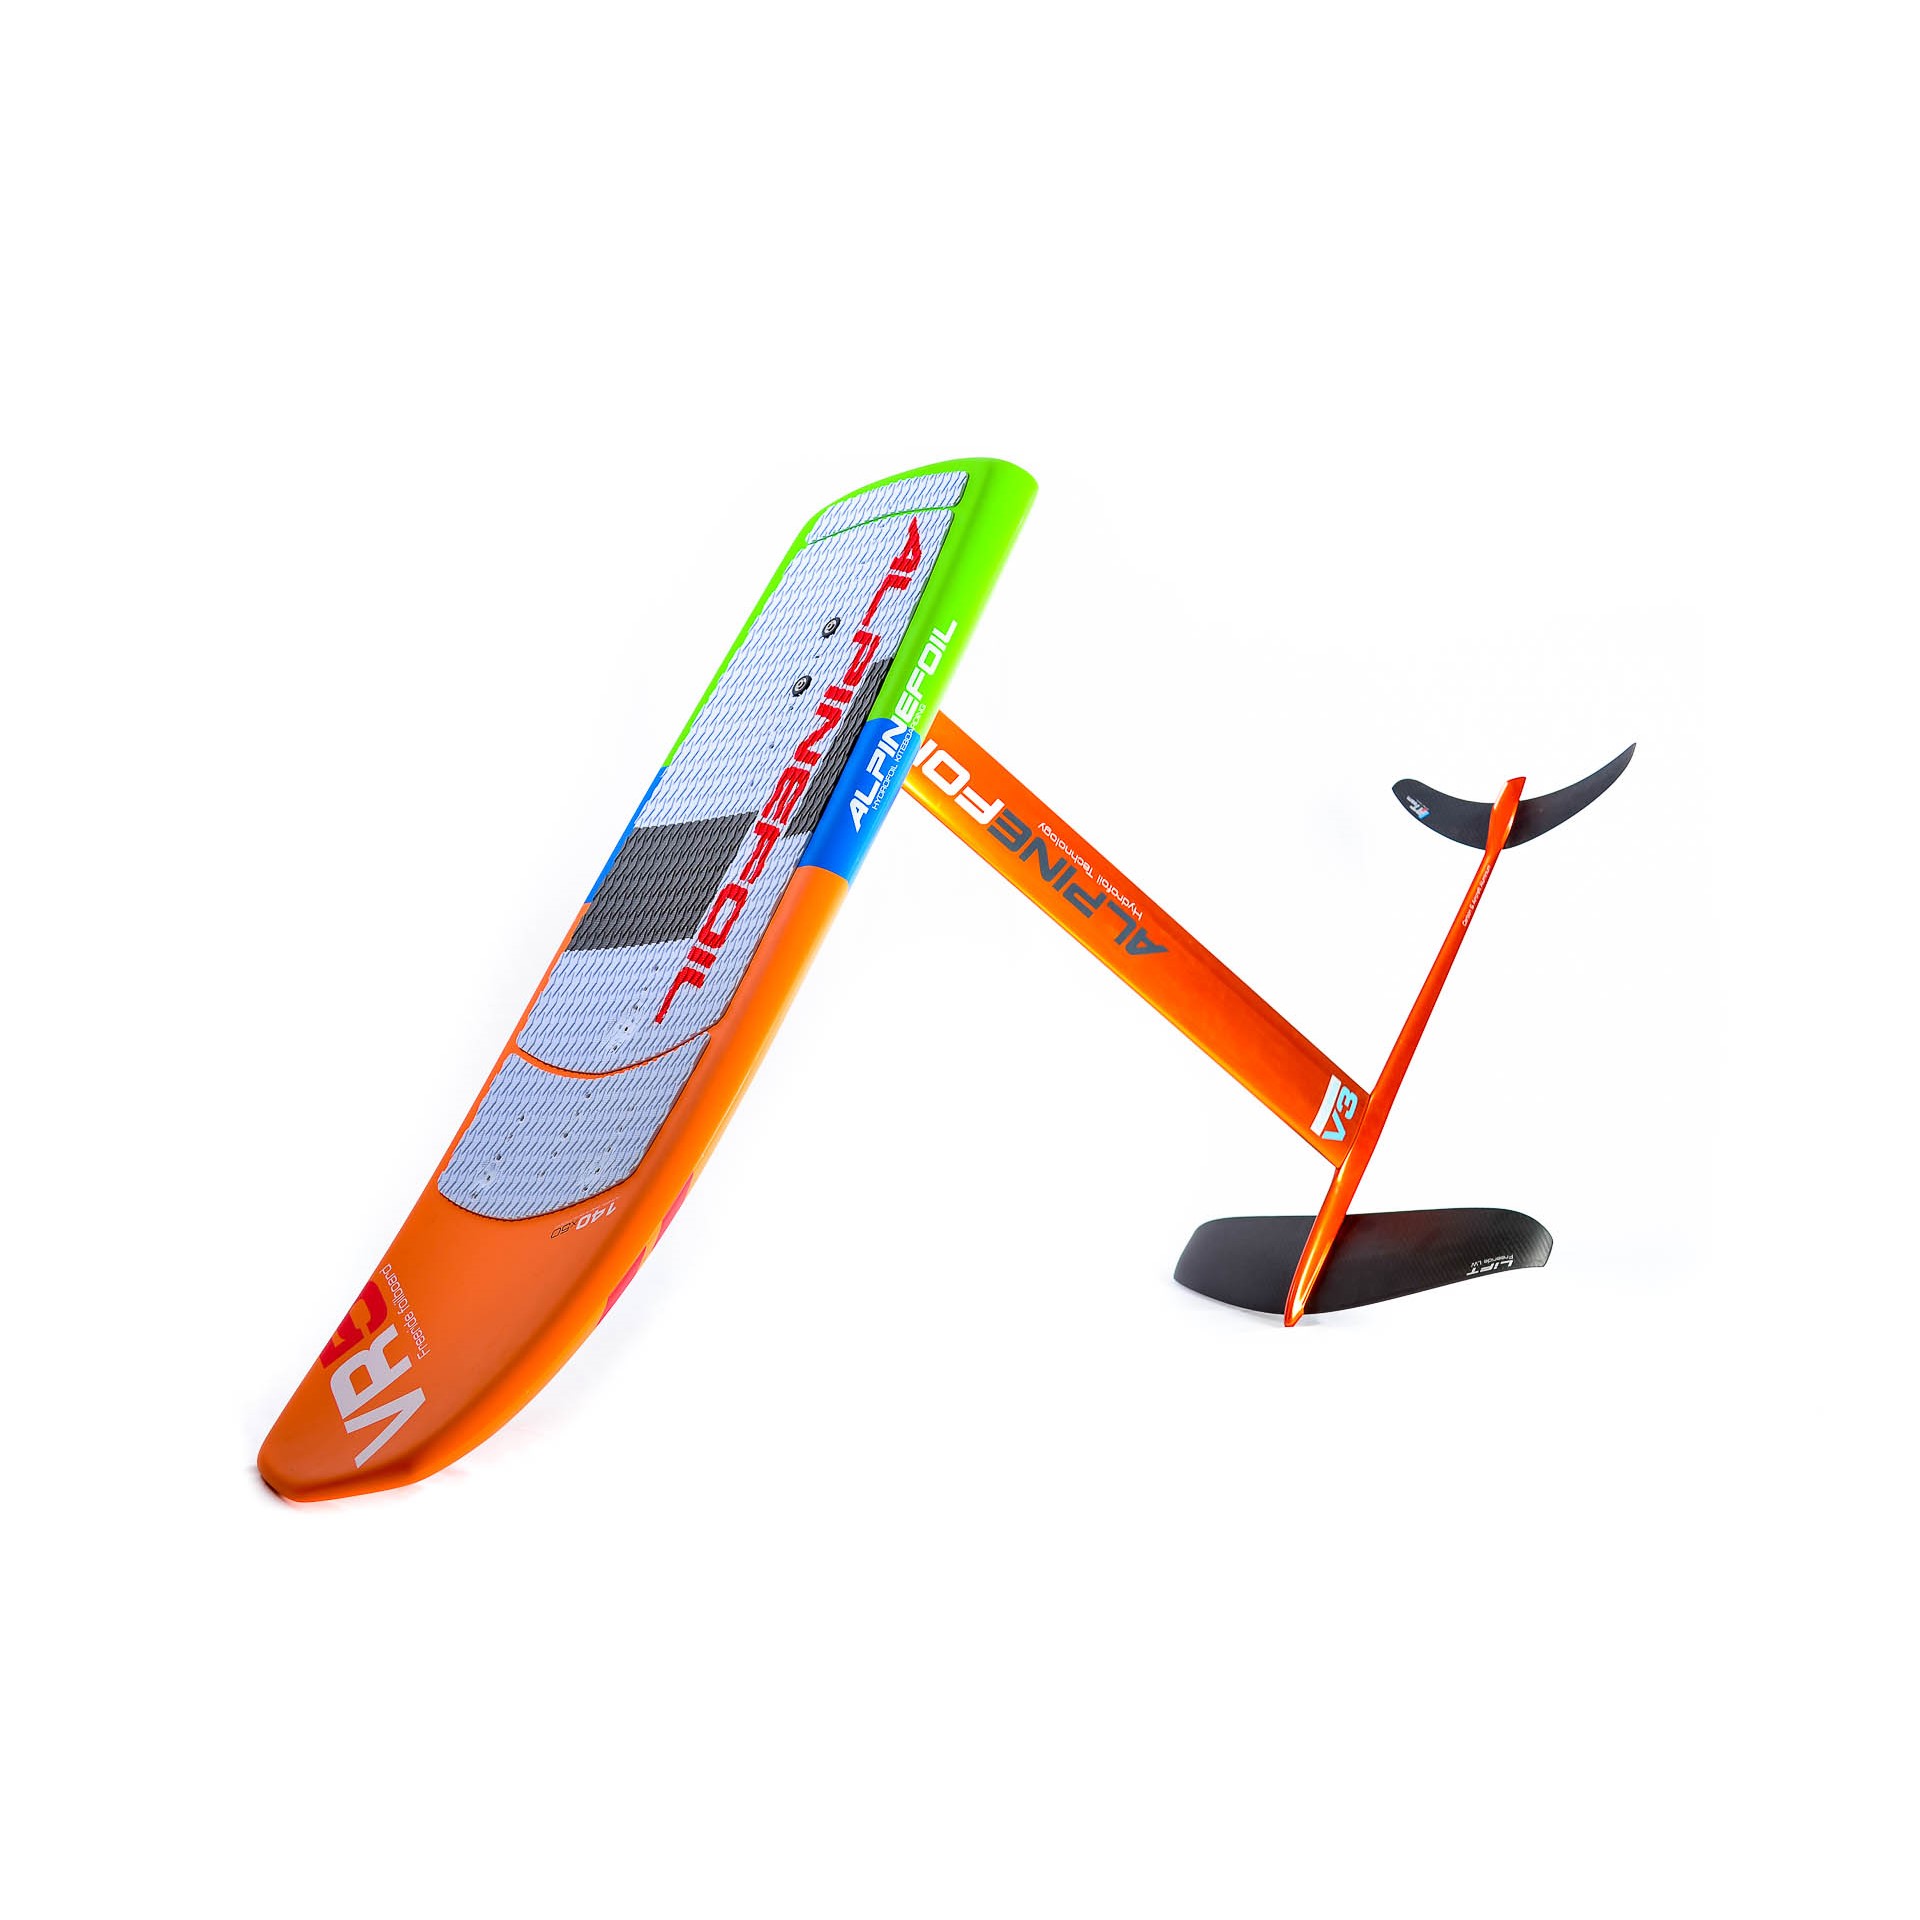 Kitefoil board alpinefoil 8845